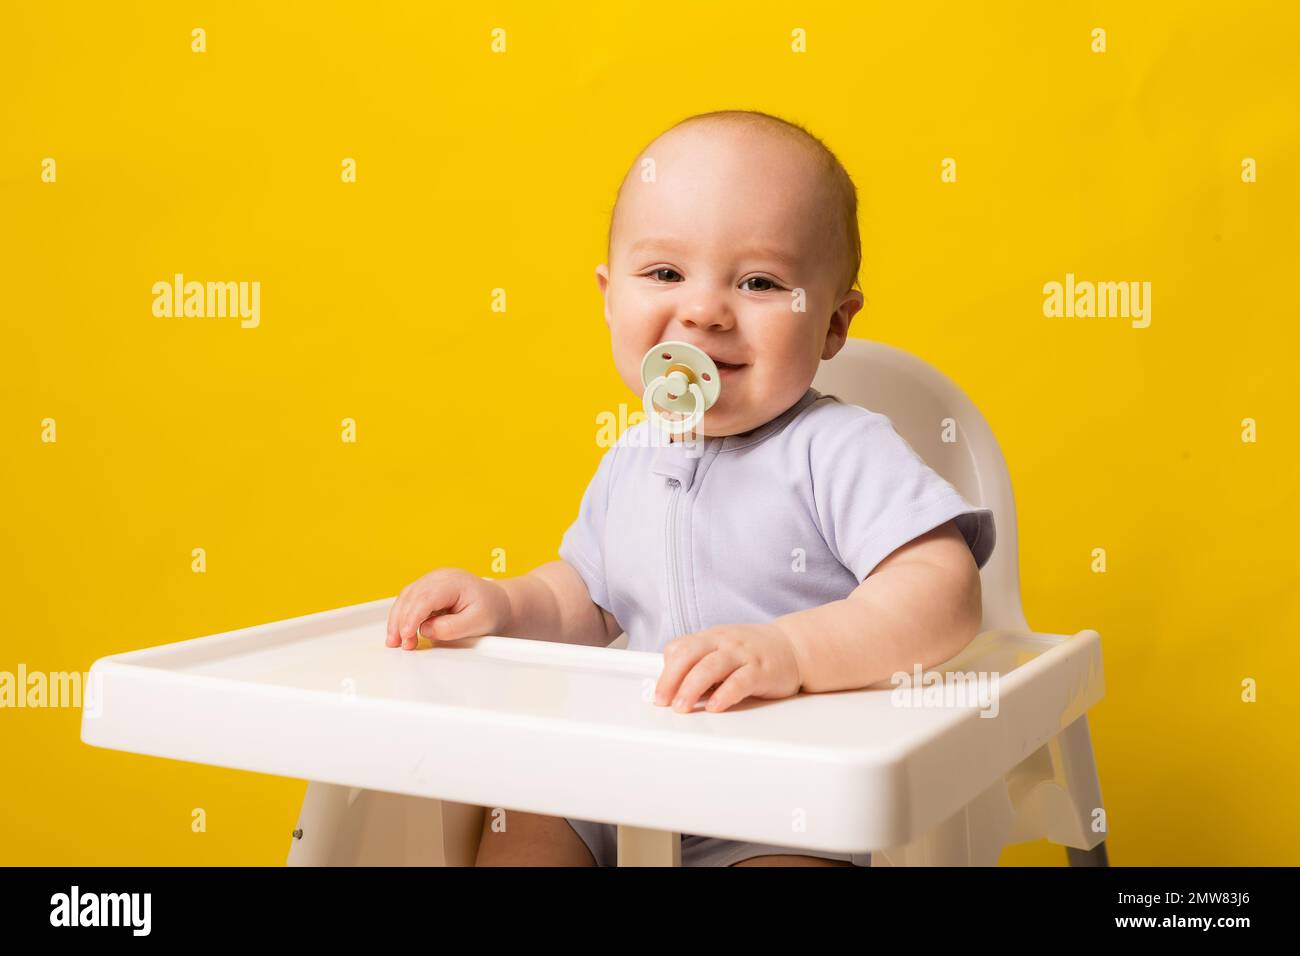 bambino carino con un succhietto in bocca in un seggiolone su uno sfondo giallo. Pappe per bambini, spazio per il testo. Foto di alta qualità Foto Stock